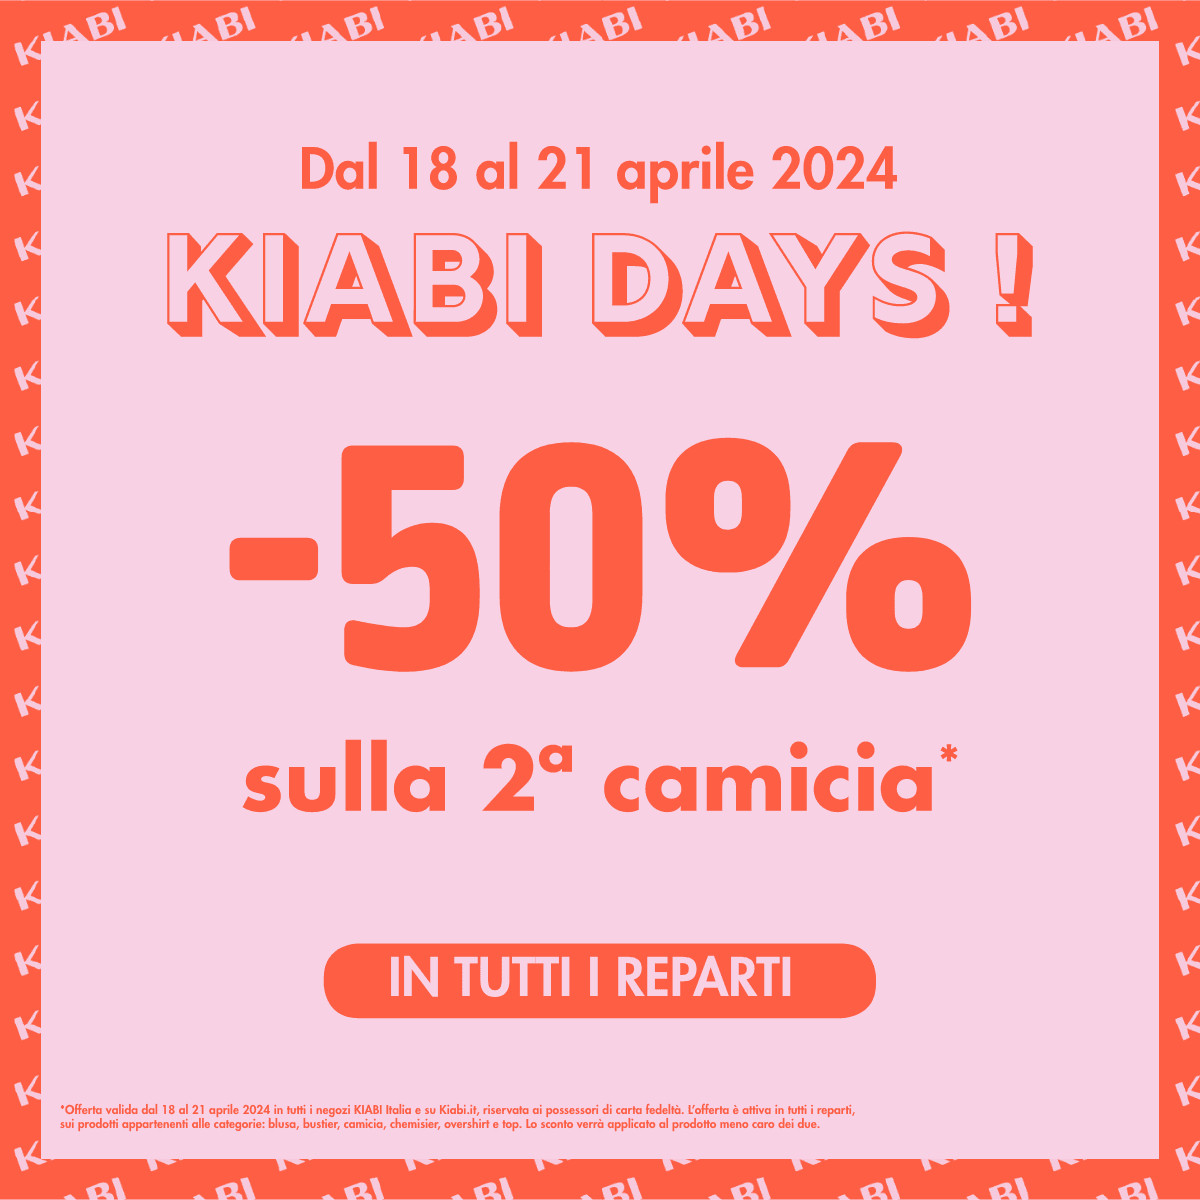 KIABI DAYS! -50% sulla seconda camicia